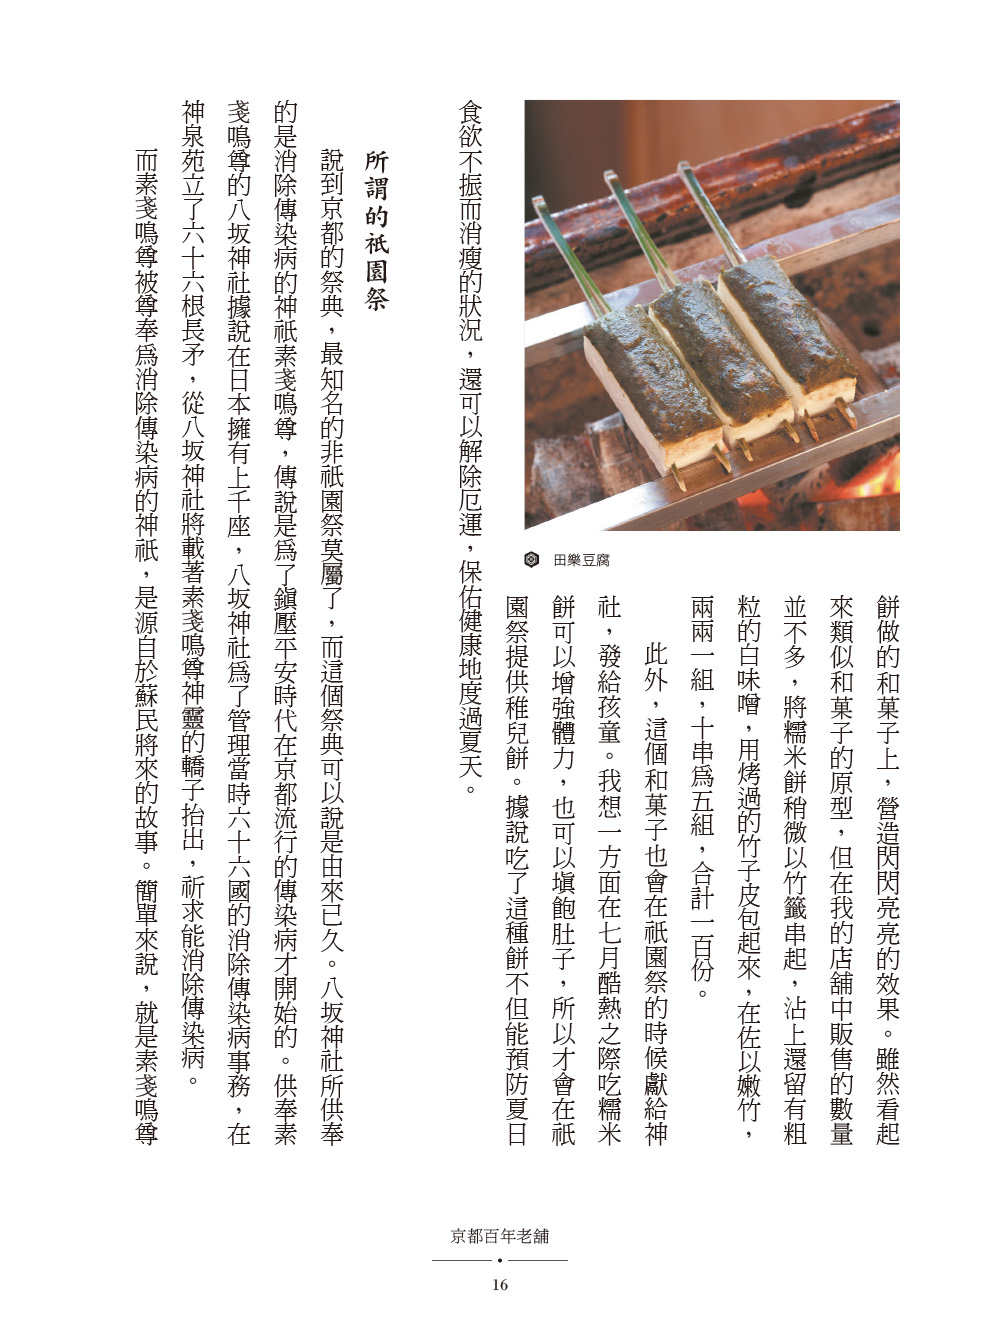 ►人文史地►暢銷書► 京都百年老舖：發現老店中的祖傳祕技、經營哲學、生活理念，深入京都人食衣住的根源